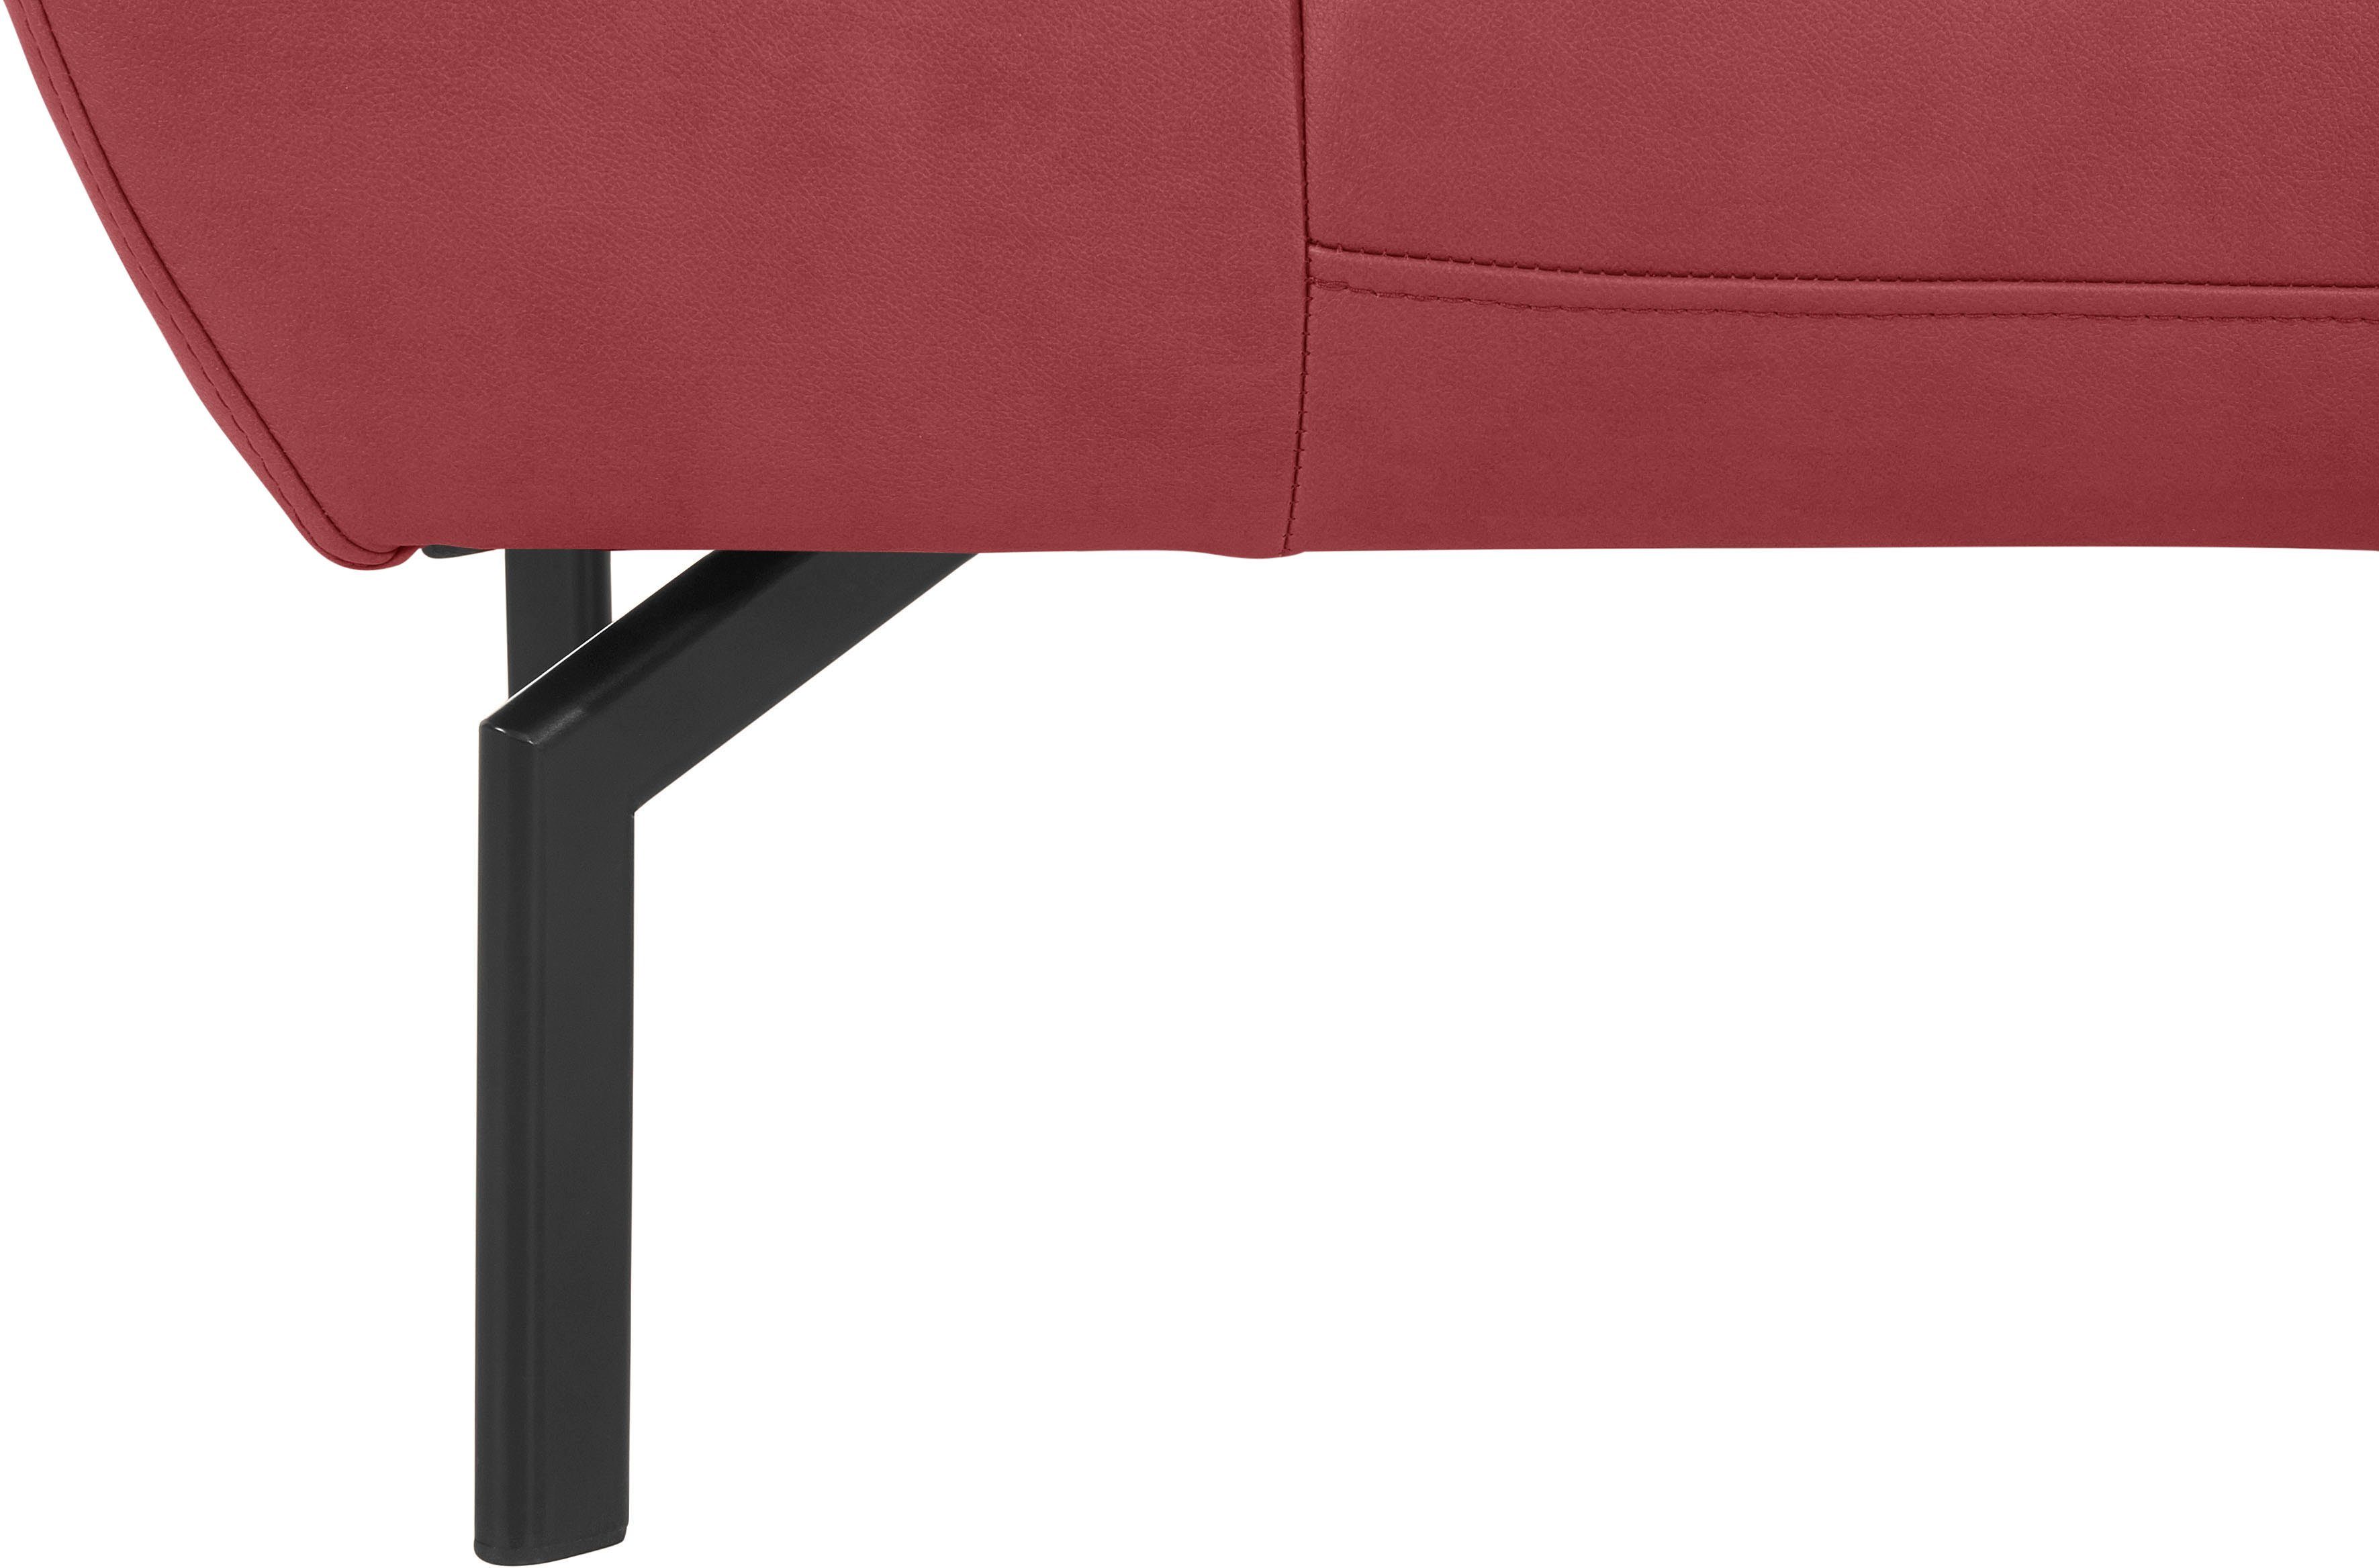 Luxus-Microfaser Places of 2-Sitzer mit Trapino Luxus, in Rückenverstellung, Lederoptik wahlweise Style